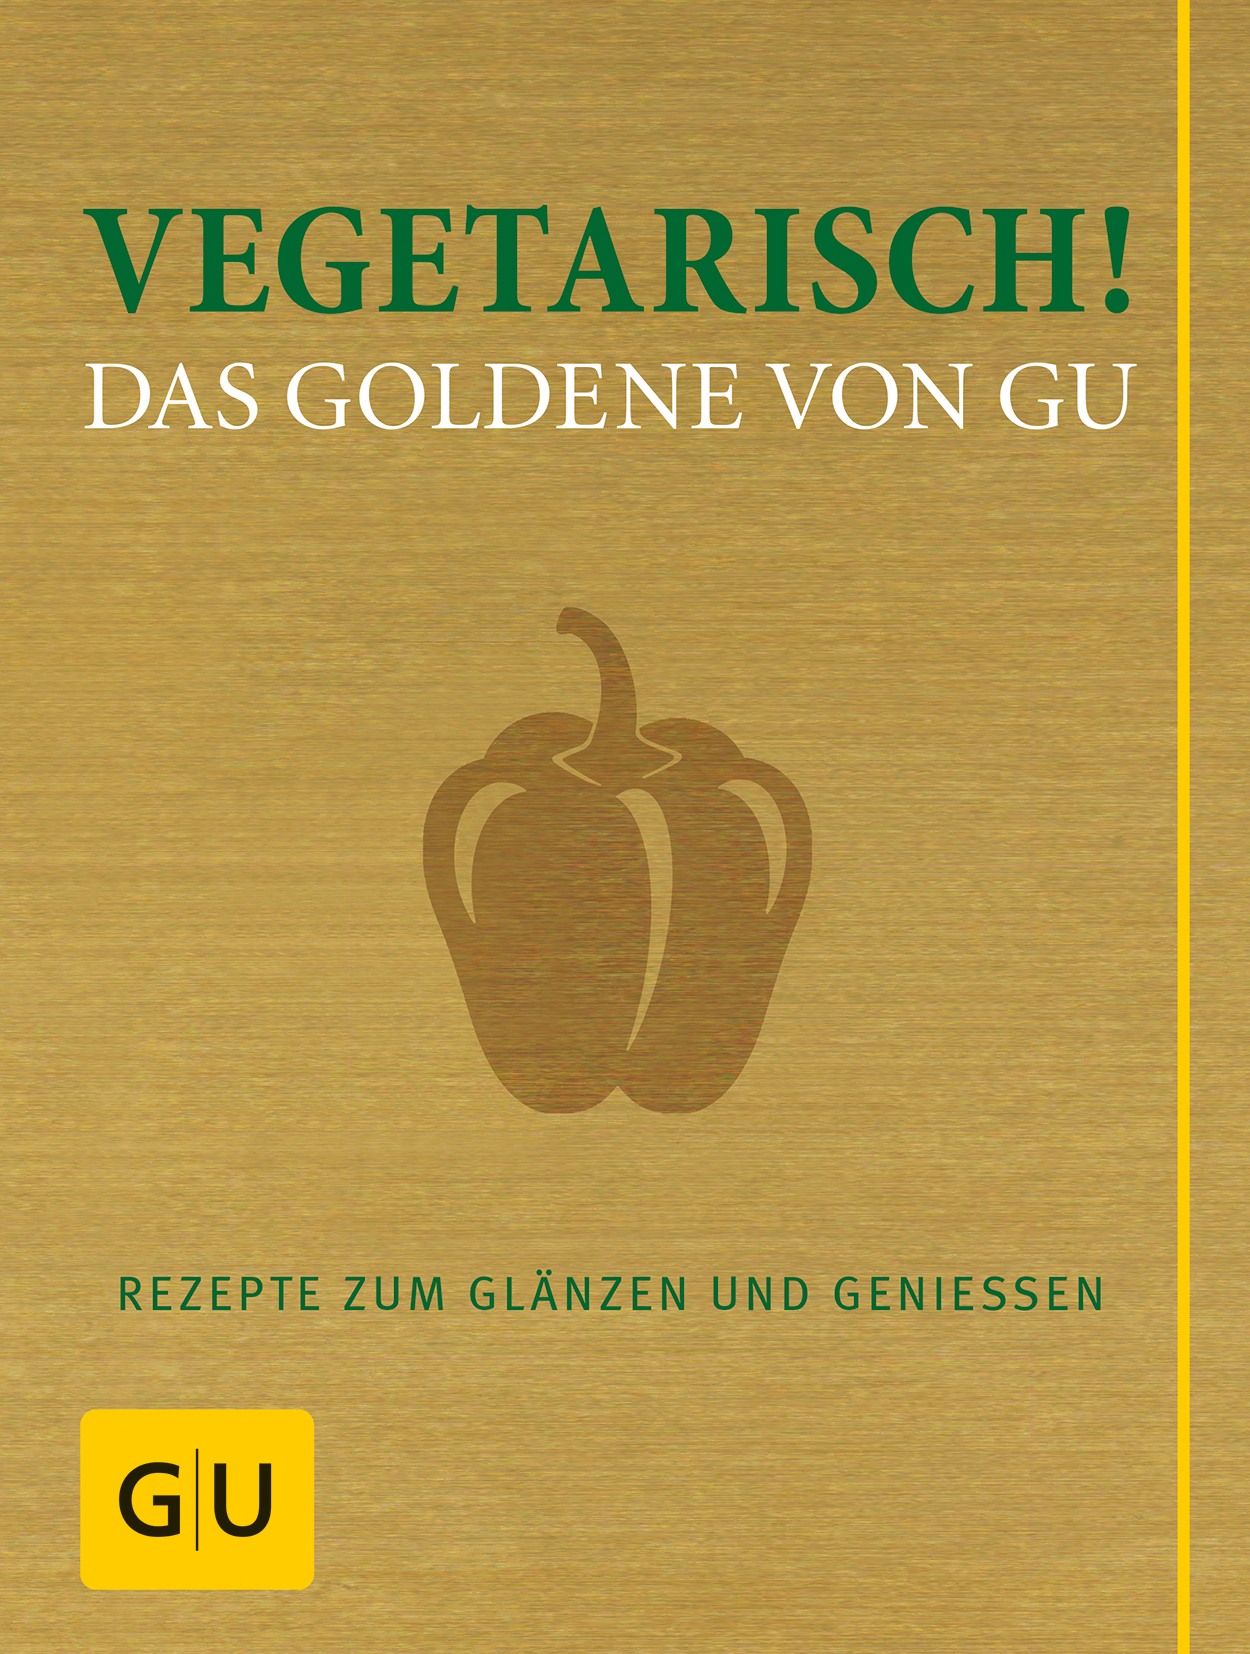 Vegetarisch! Das Goldene von GU Rezepte zum Glänzen und Genießen